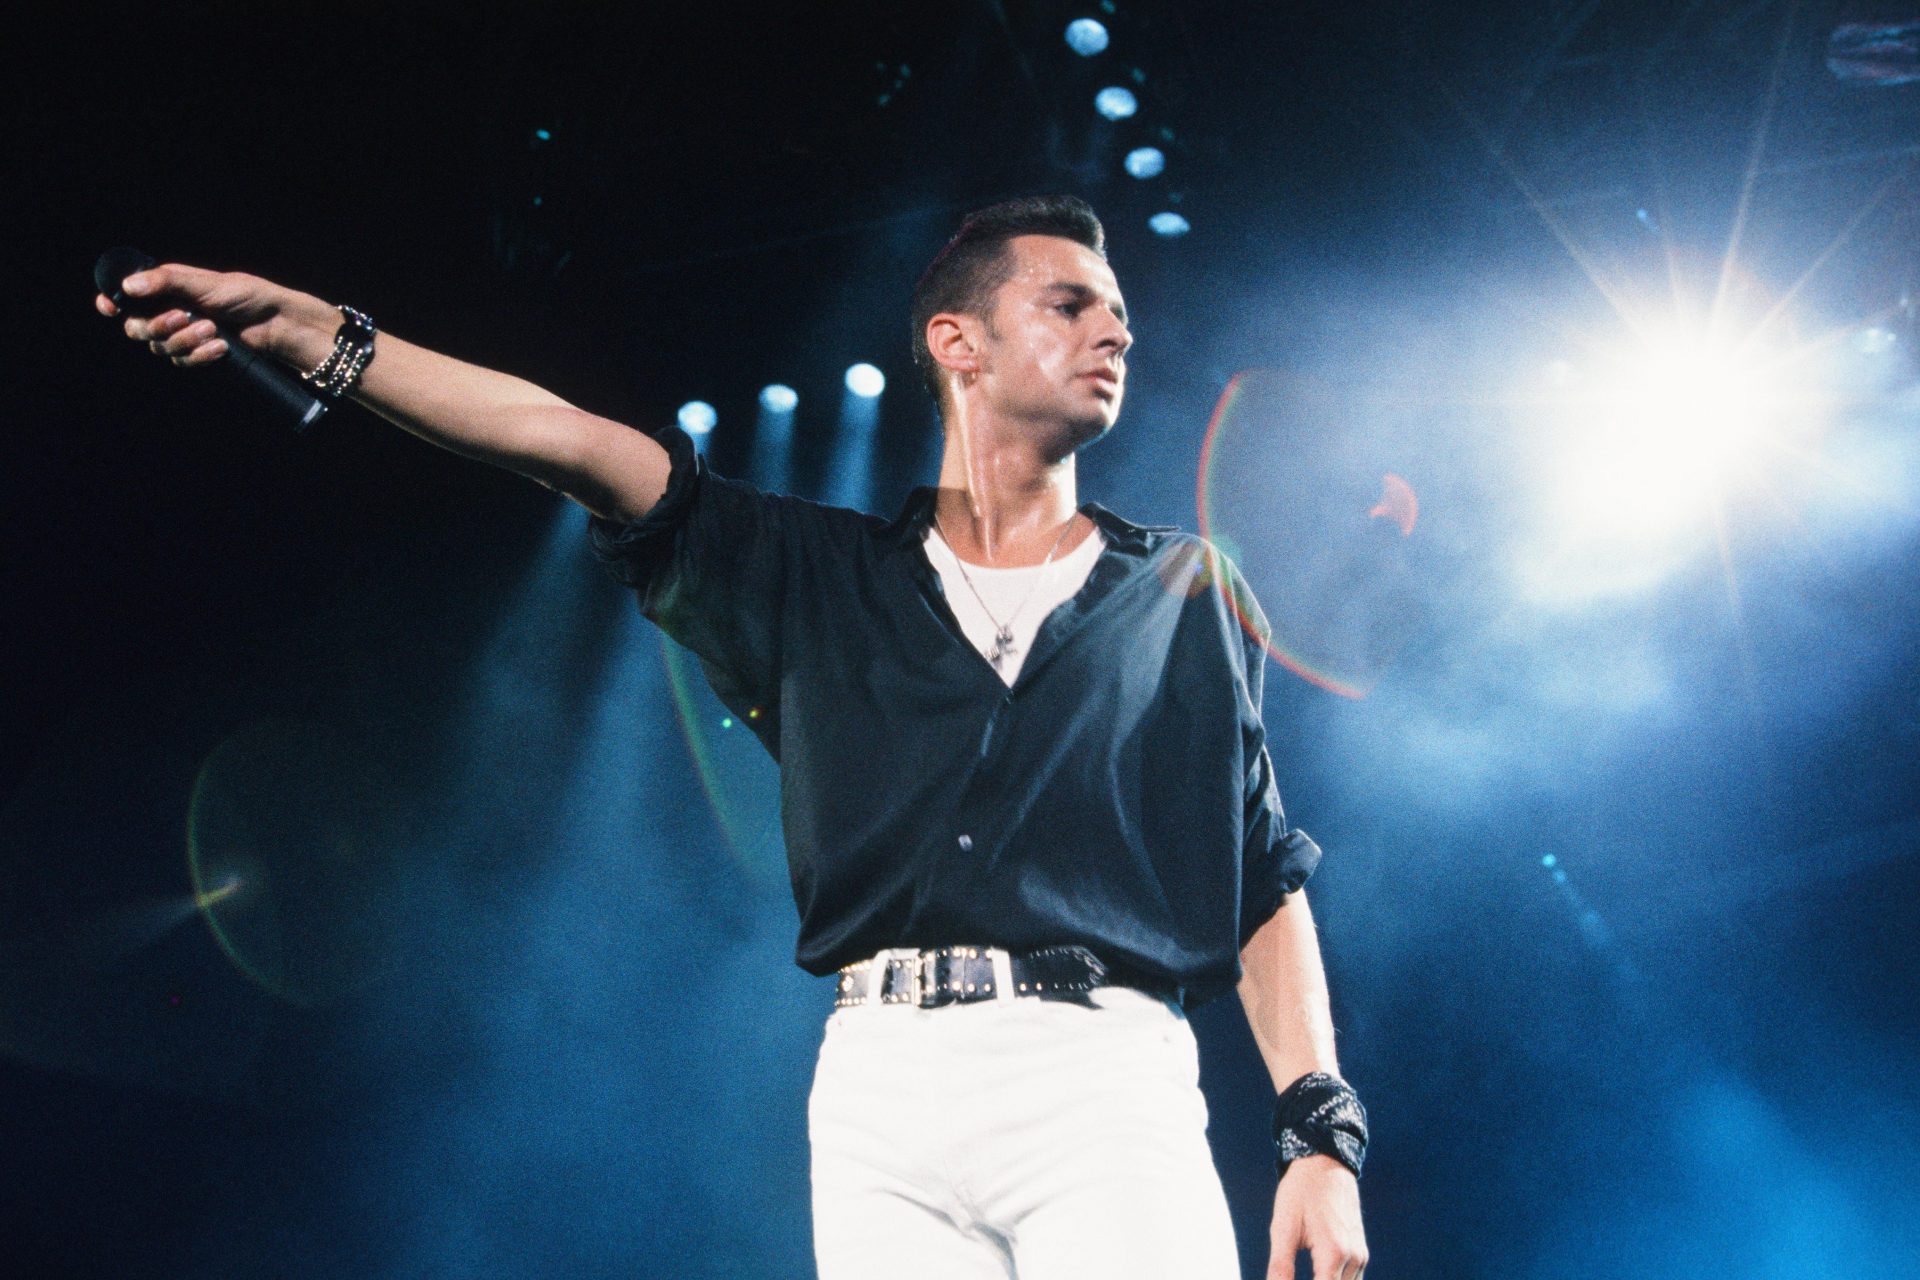 La transformación de David Gahan de Depeche Mode